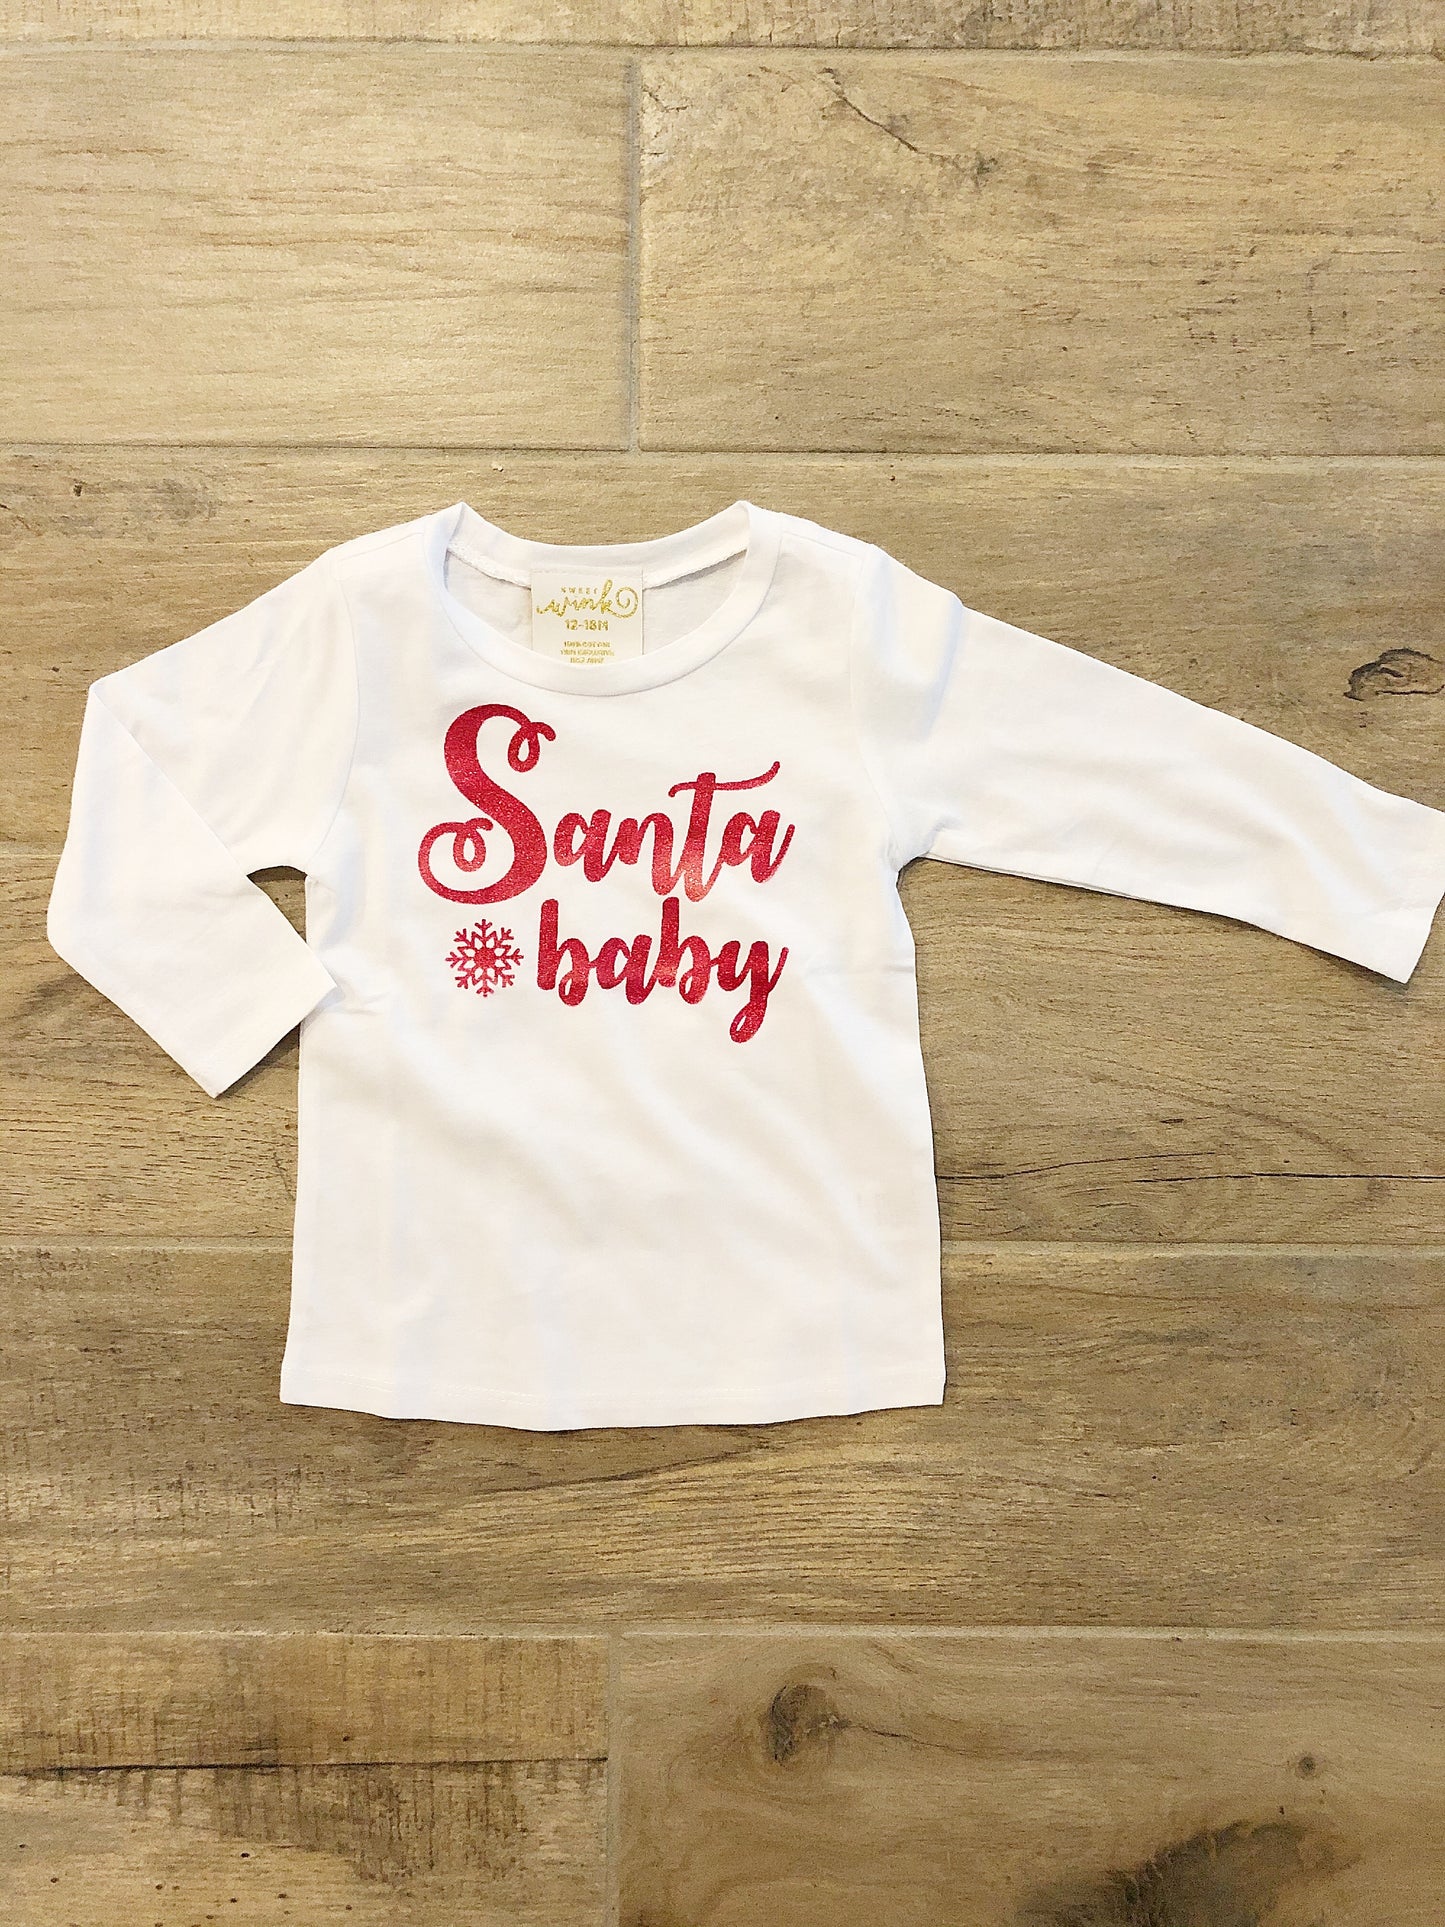 Sweet Wink- Santa Baby Long Sleeve Girls Tee